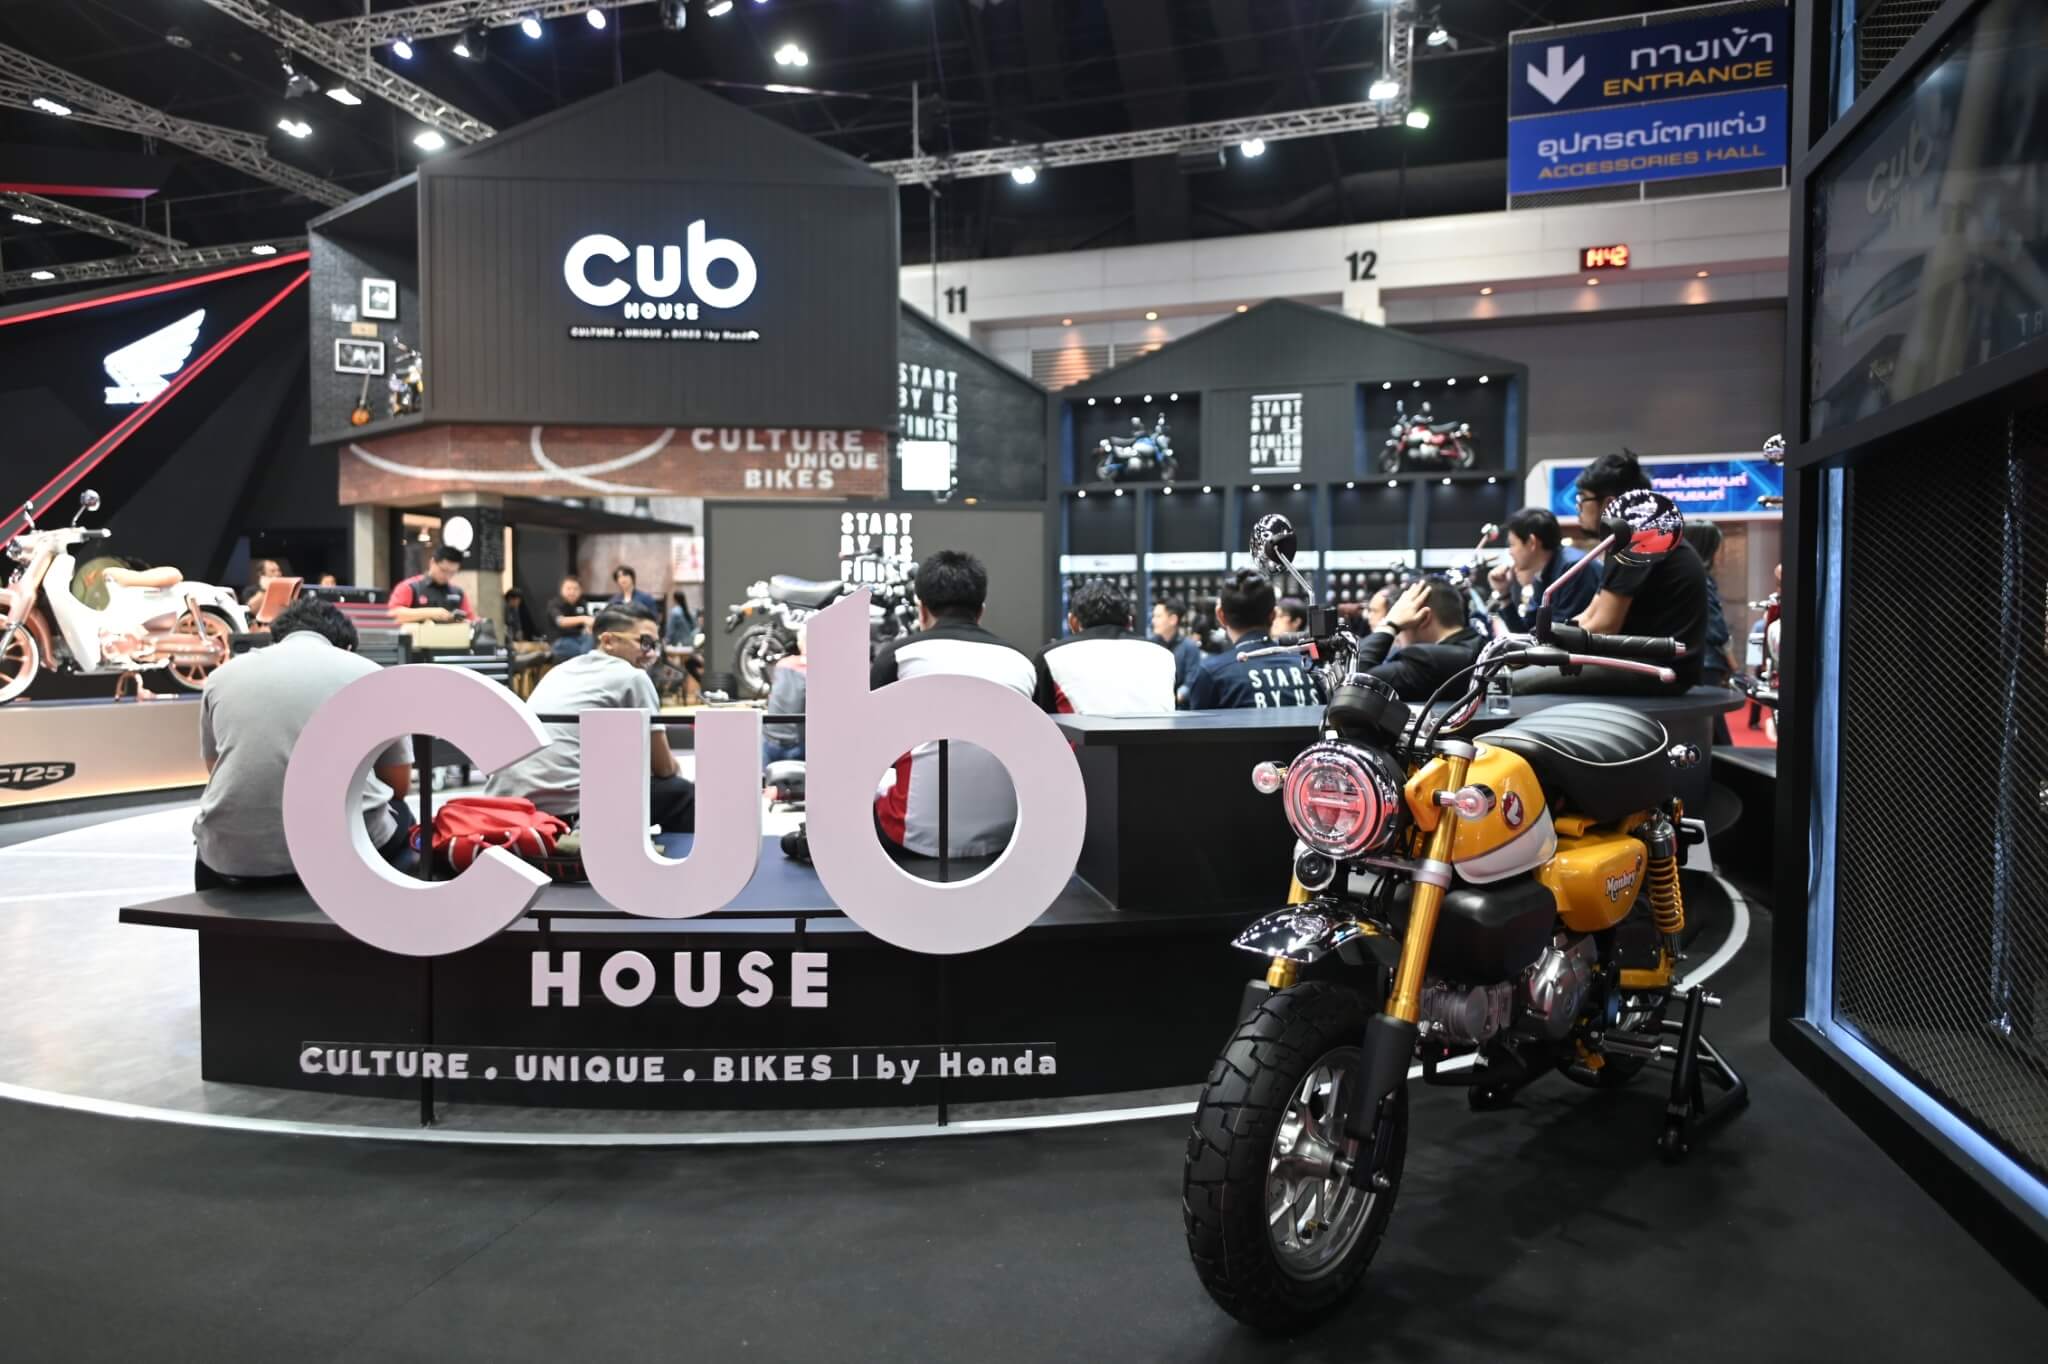 CUB House บูทของคนมีสไตล์! ที่งาน Motor Show 2019